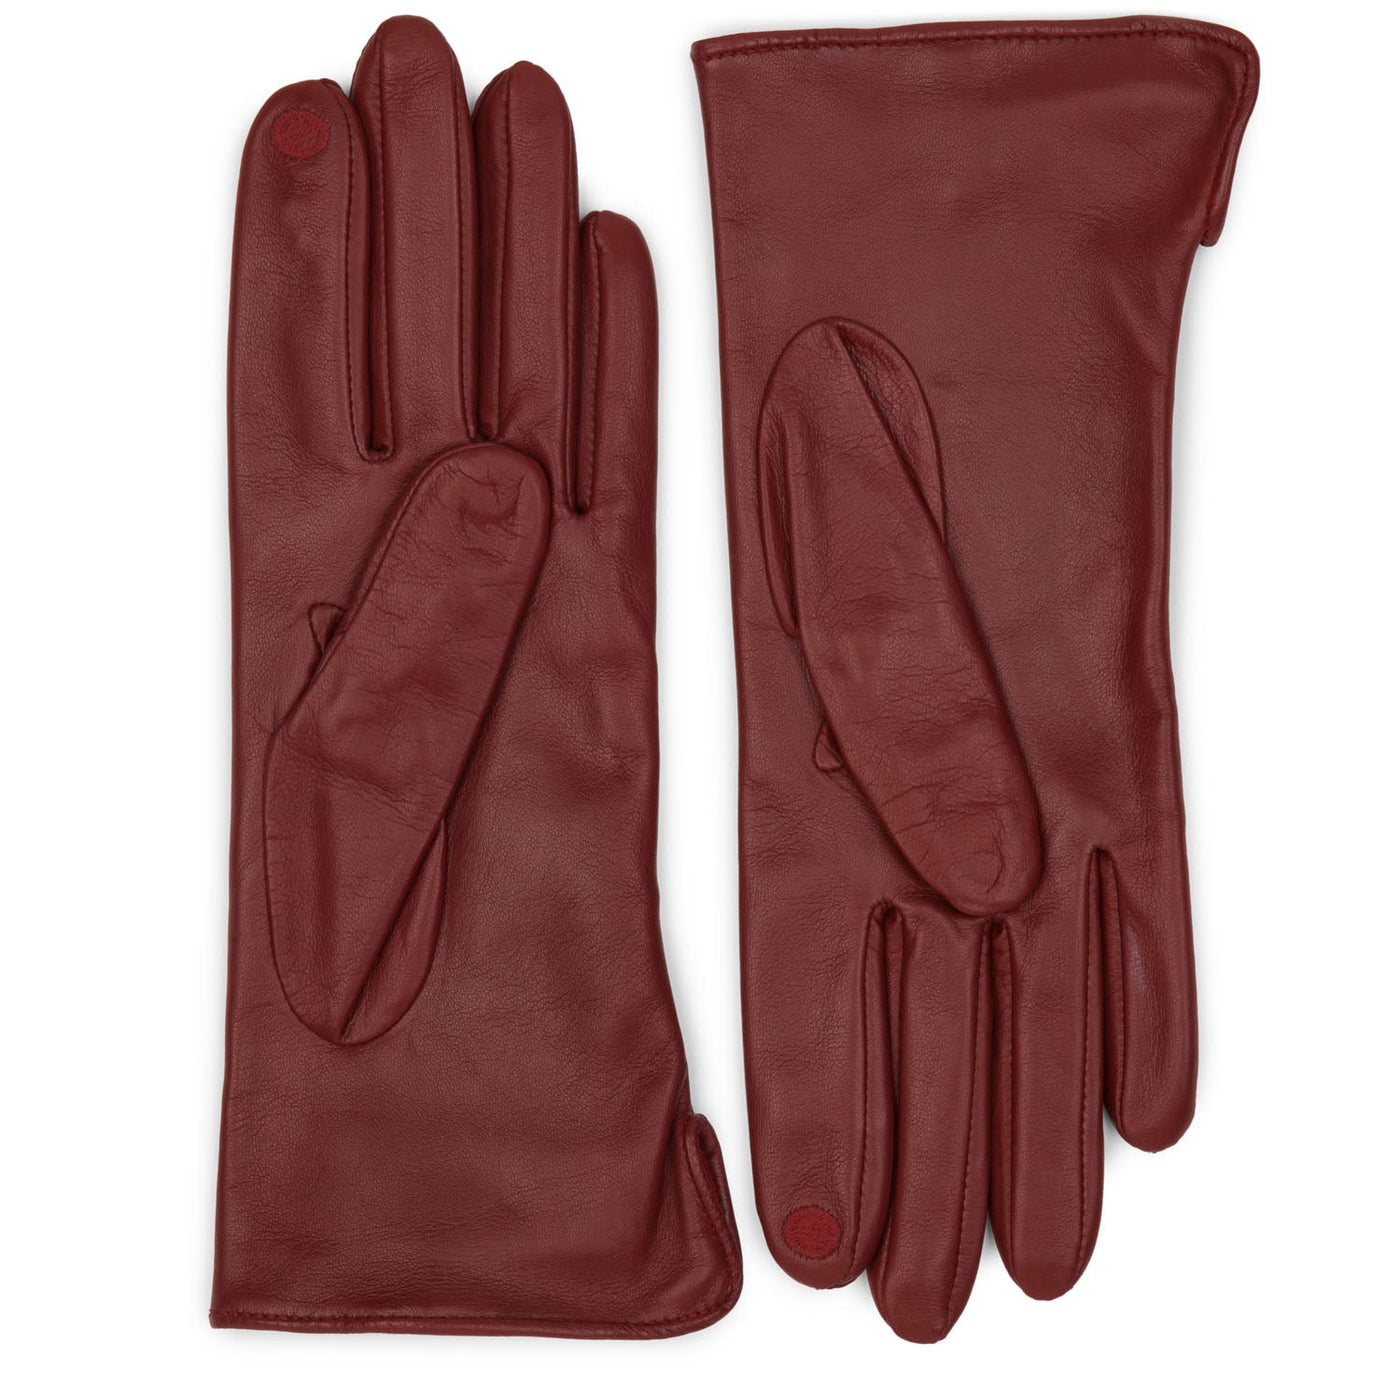 gloves - accessoires gants femme #couleur_rouge